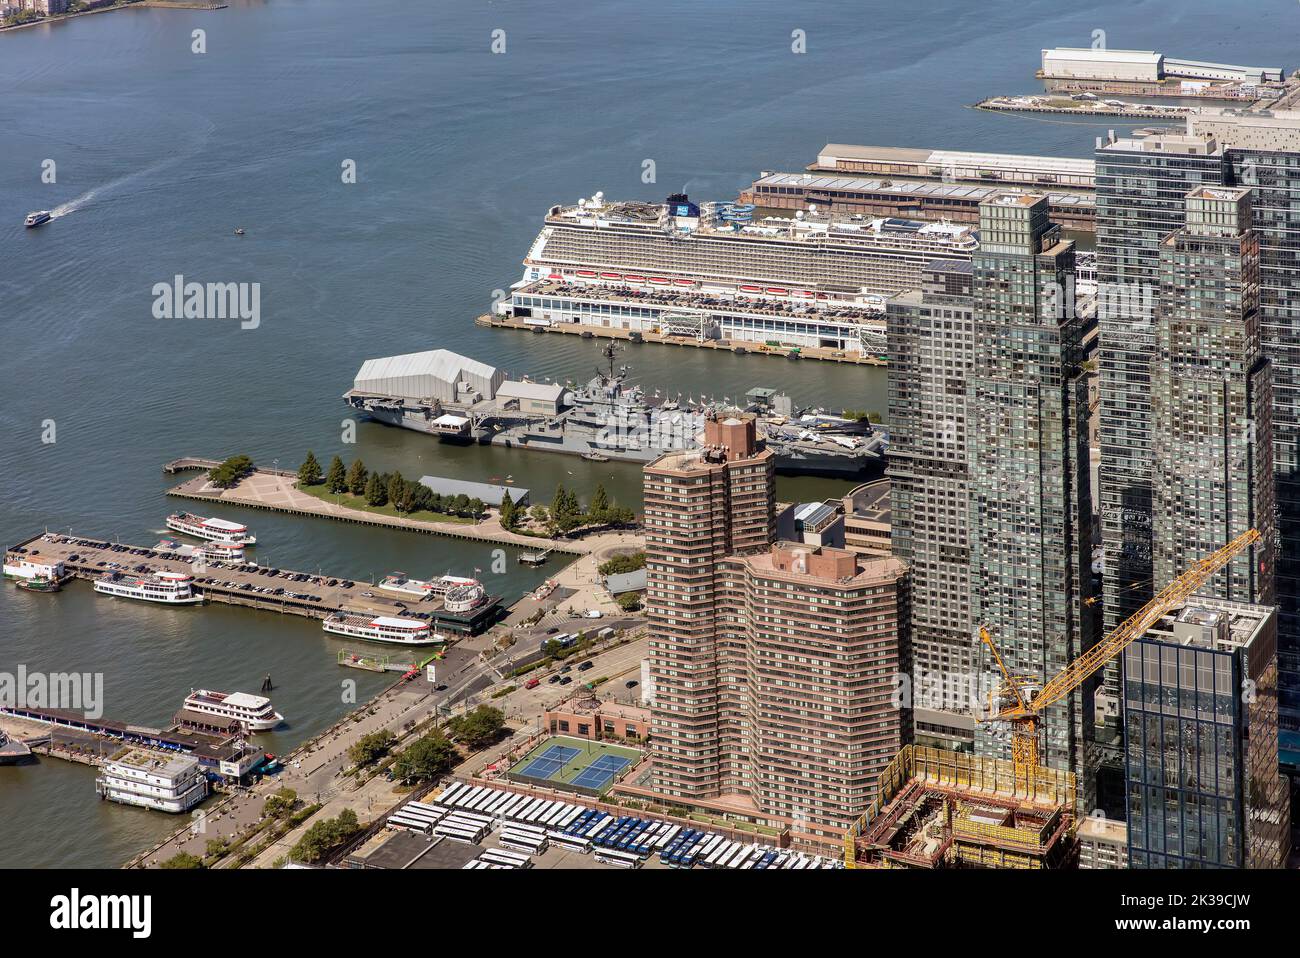 Vue aérienne des navires et des bateaux amarrés sur les jetées dans le fleuve Hudson Manhattan, New York, Etats-Unis Banque D'Images